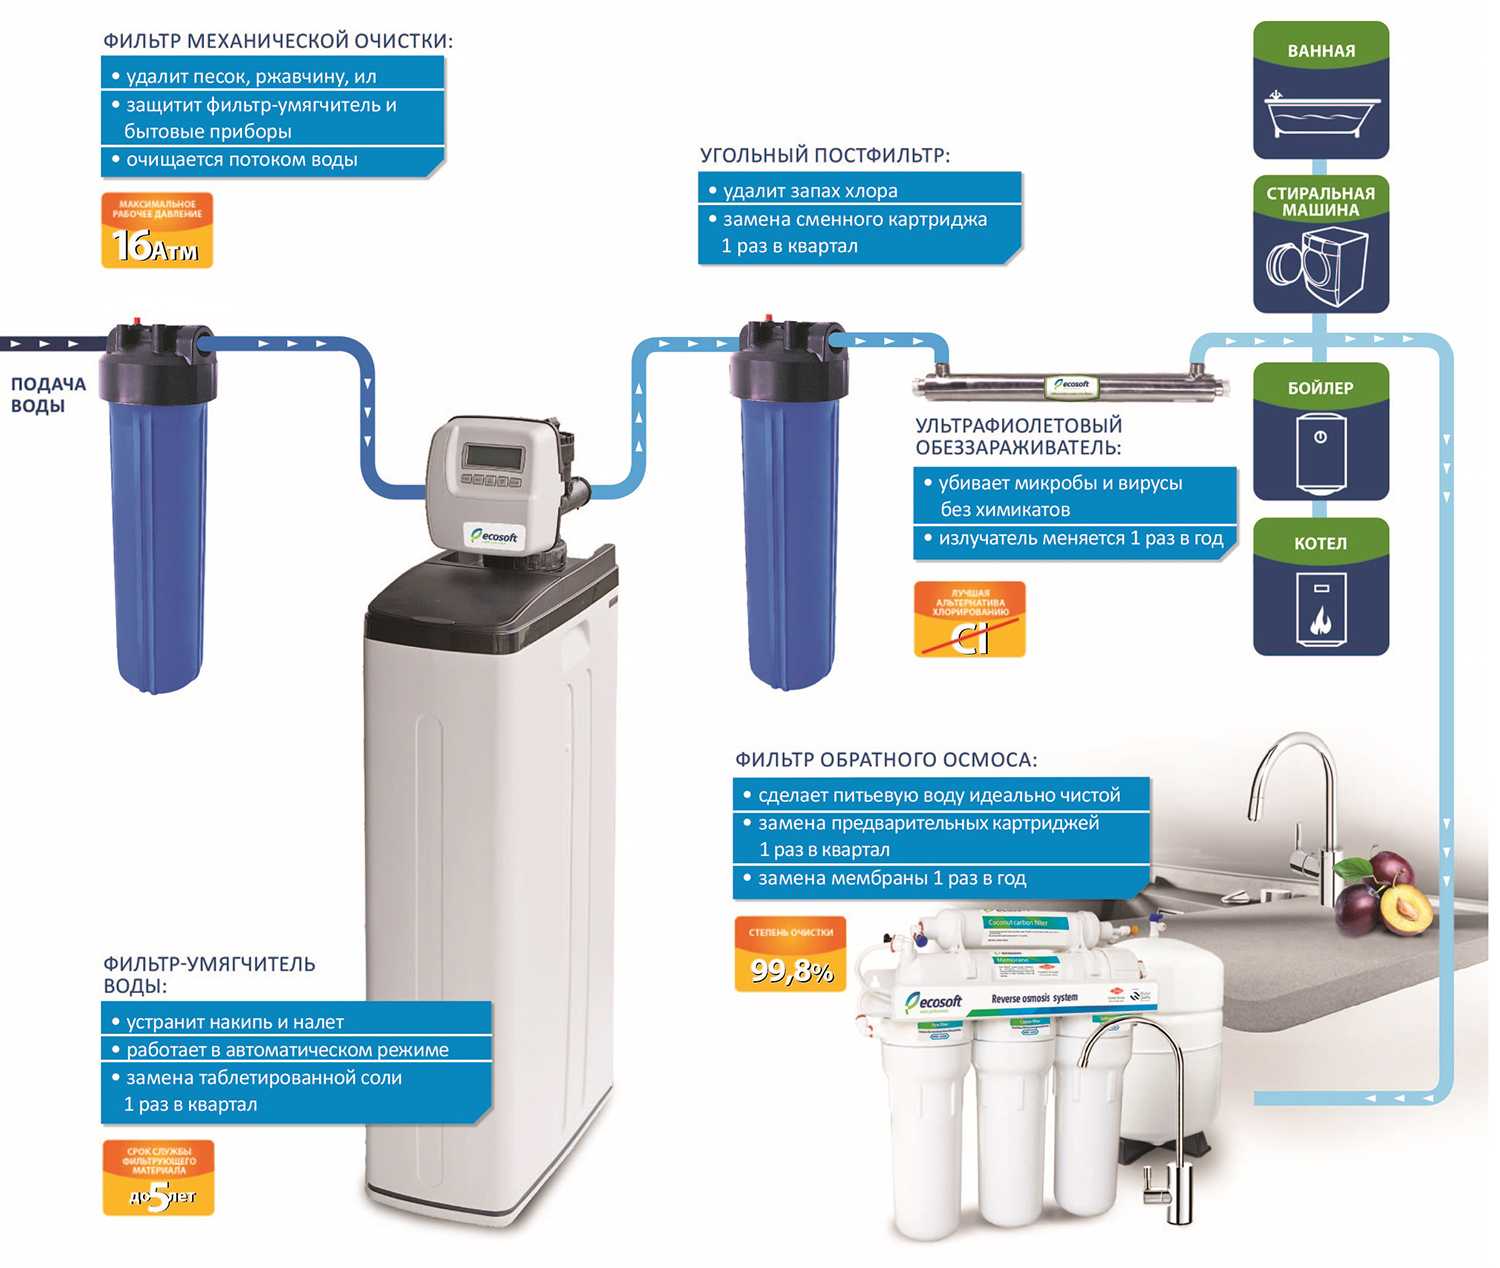 Как пользоваться фильтрами грубой очистки для воды: виды и характеристики, установка и обслуживание